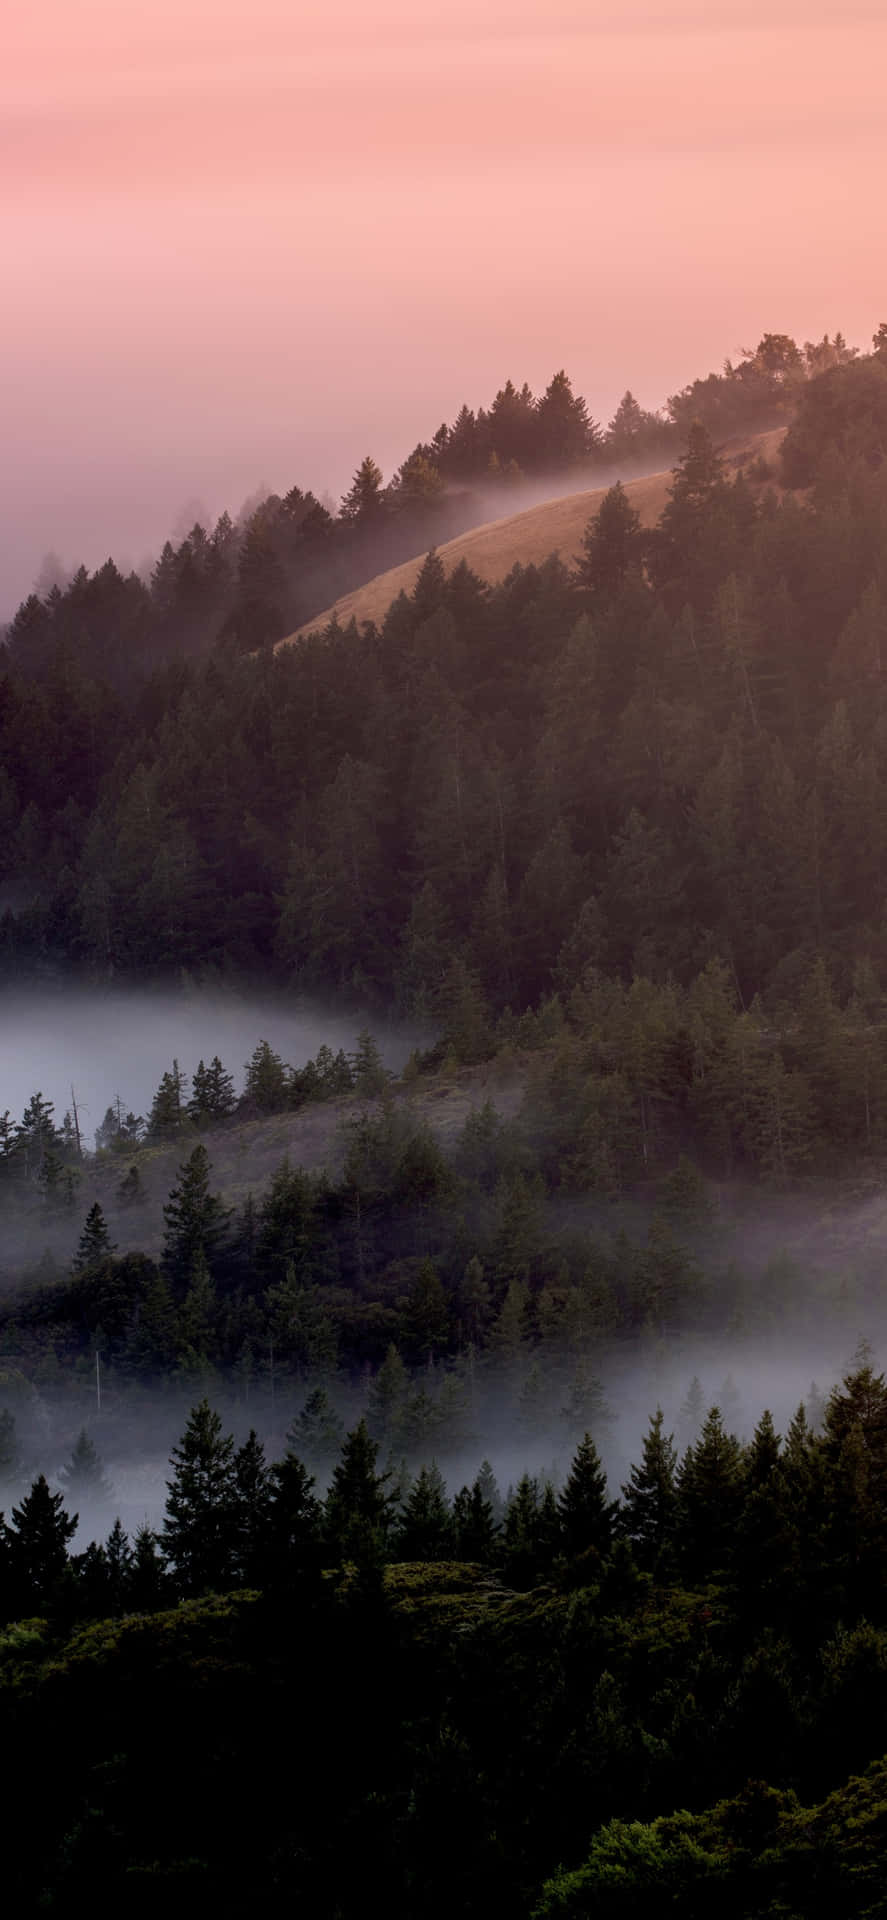 Misty Pine Forestat Dusk Wallpaper